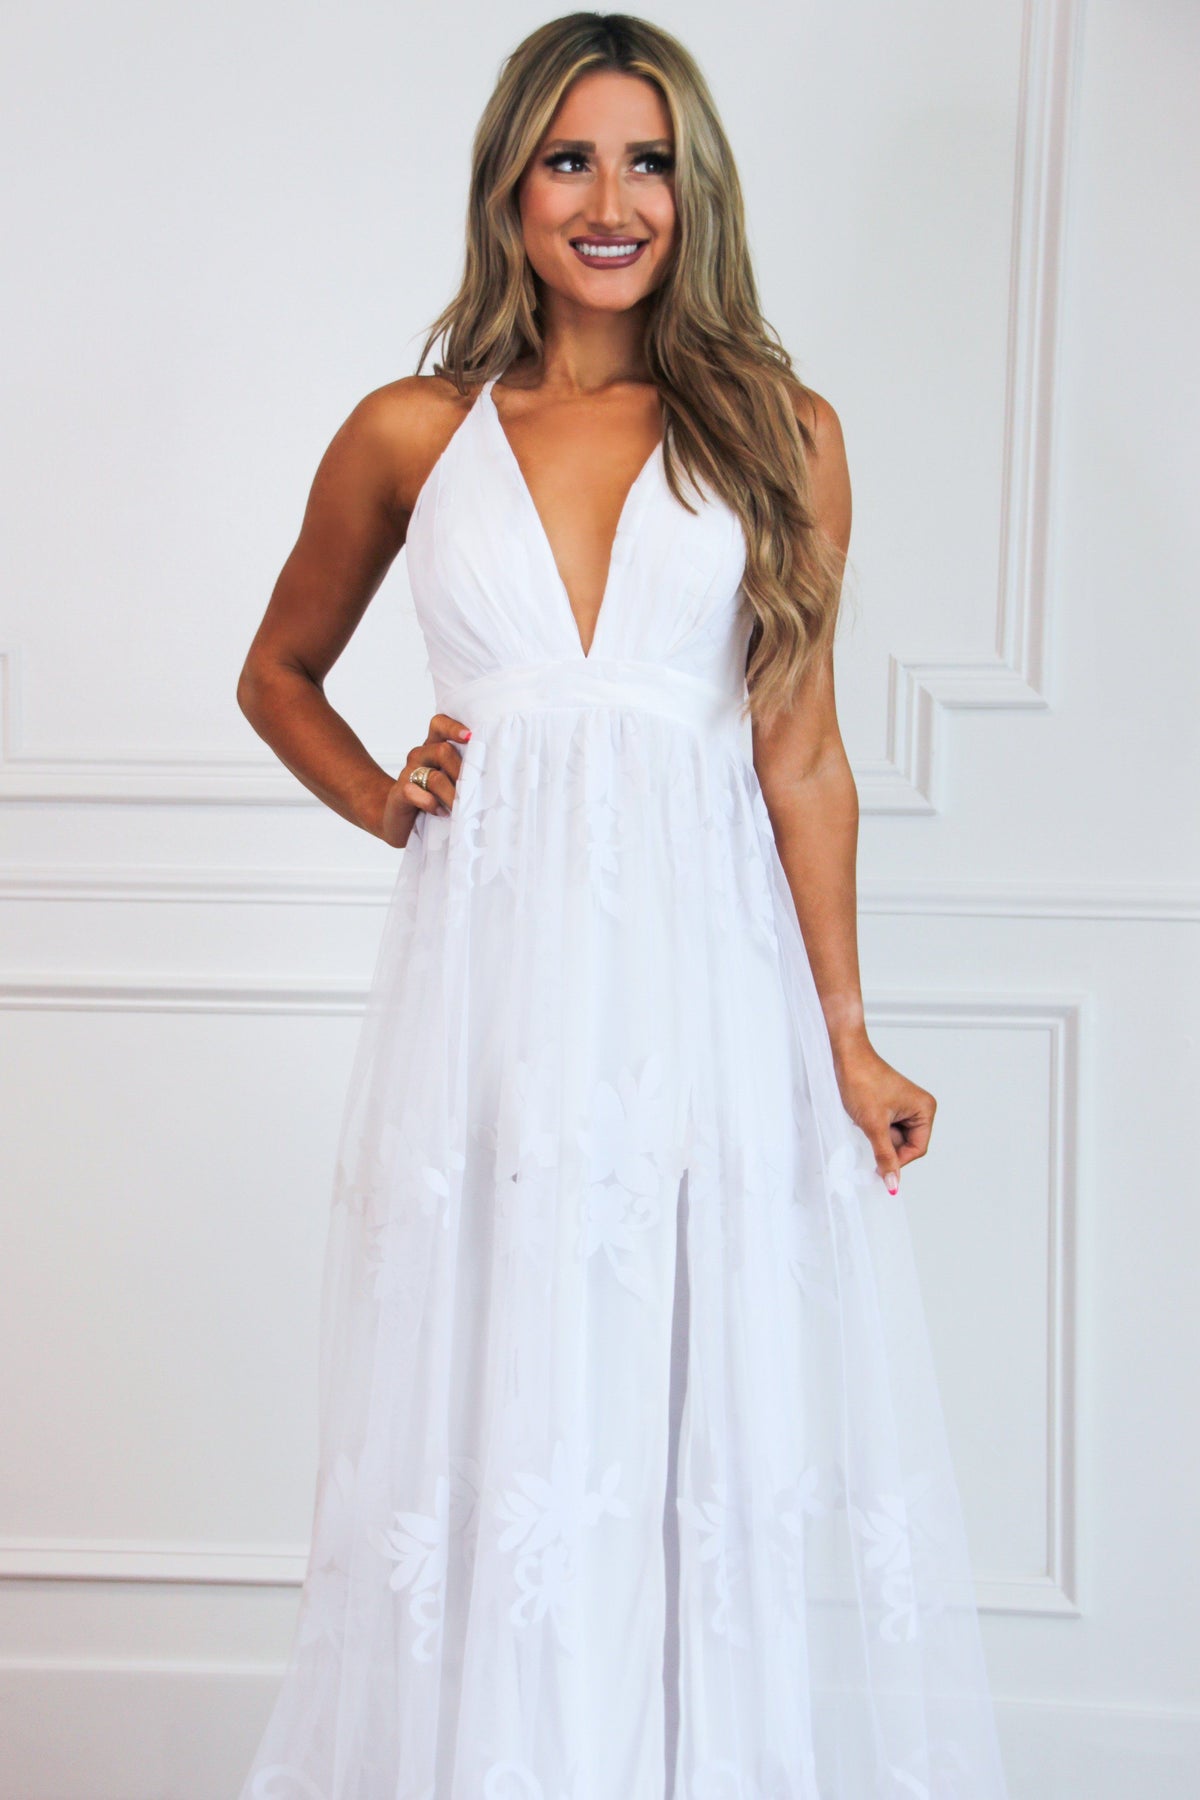 Bella and Bloom Boutique - RESTOCK: Here Comes the Bride Maxi Dress: White